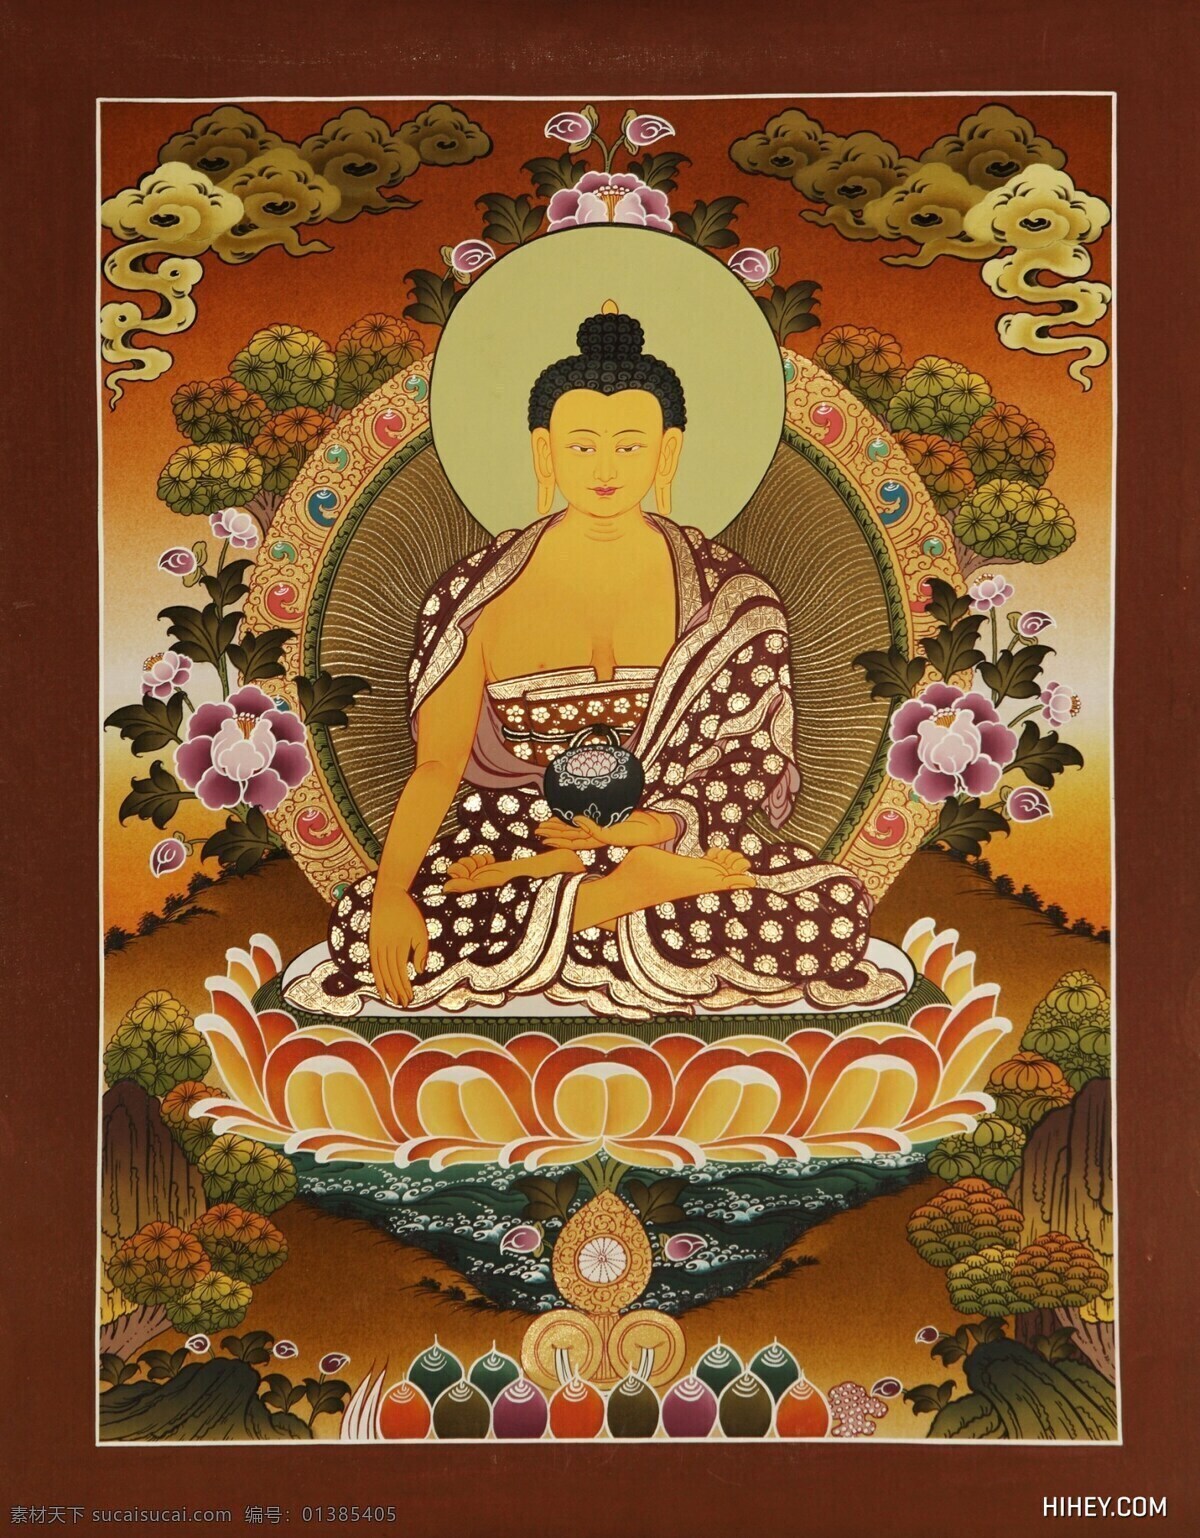 释迦牟尼佛 药师佛 释迦摩尼 西藏 唐卡 西藏佛像 藏传佛像 绘画书法 文化艺术